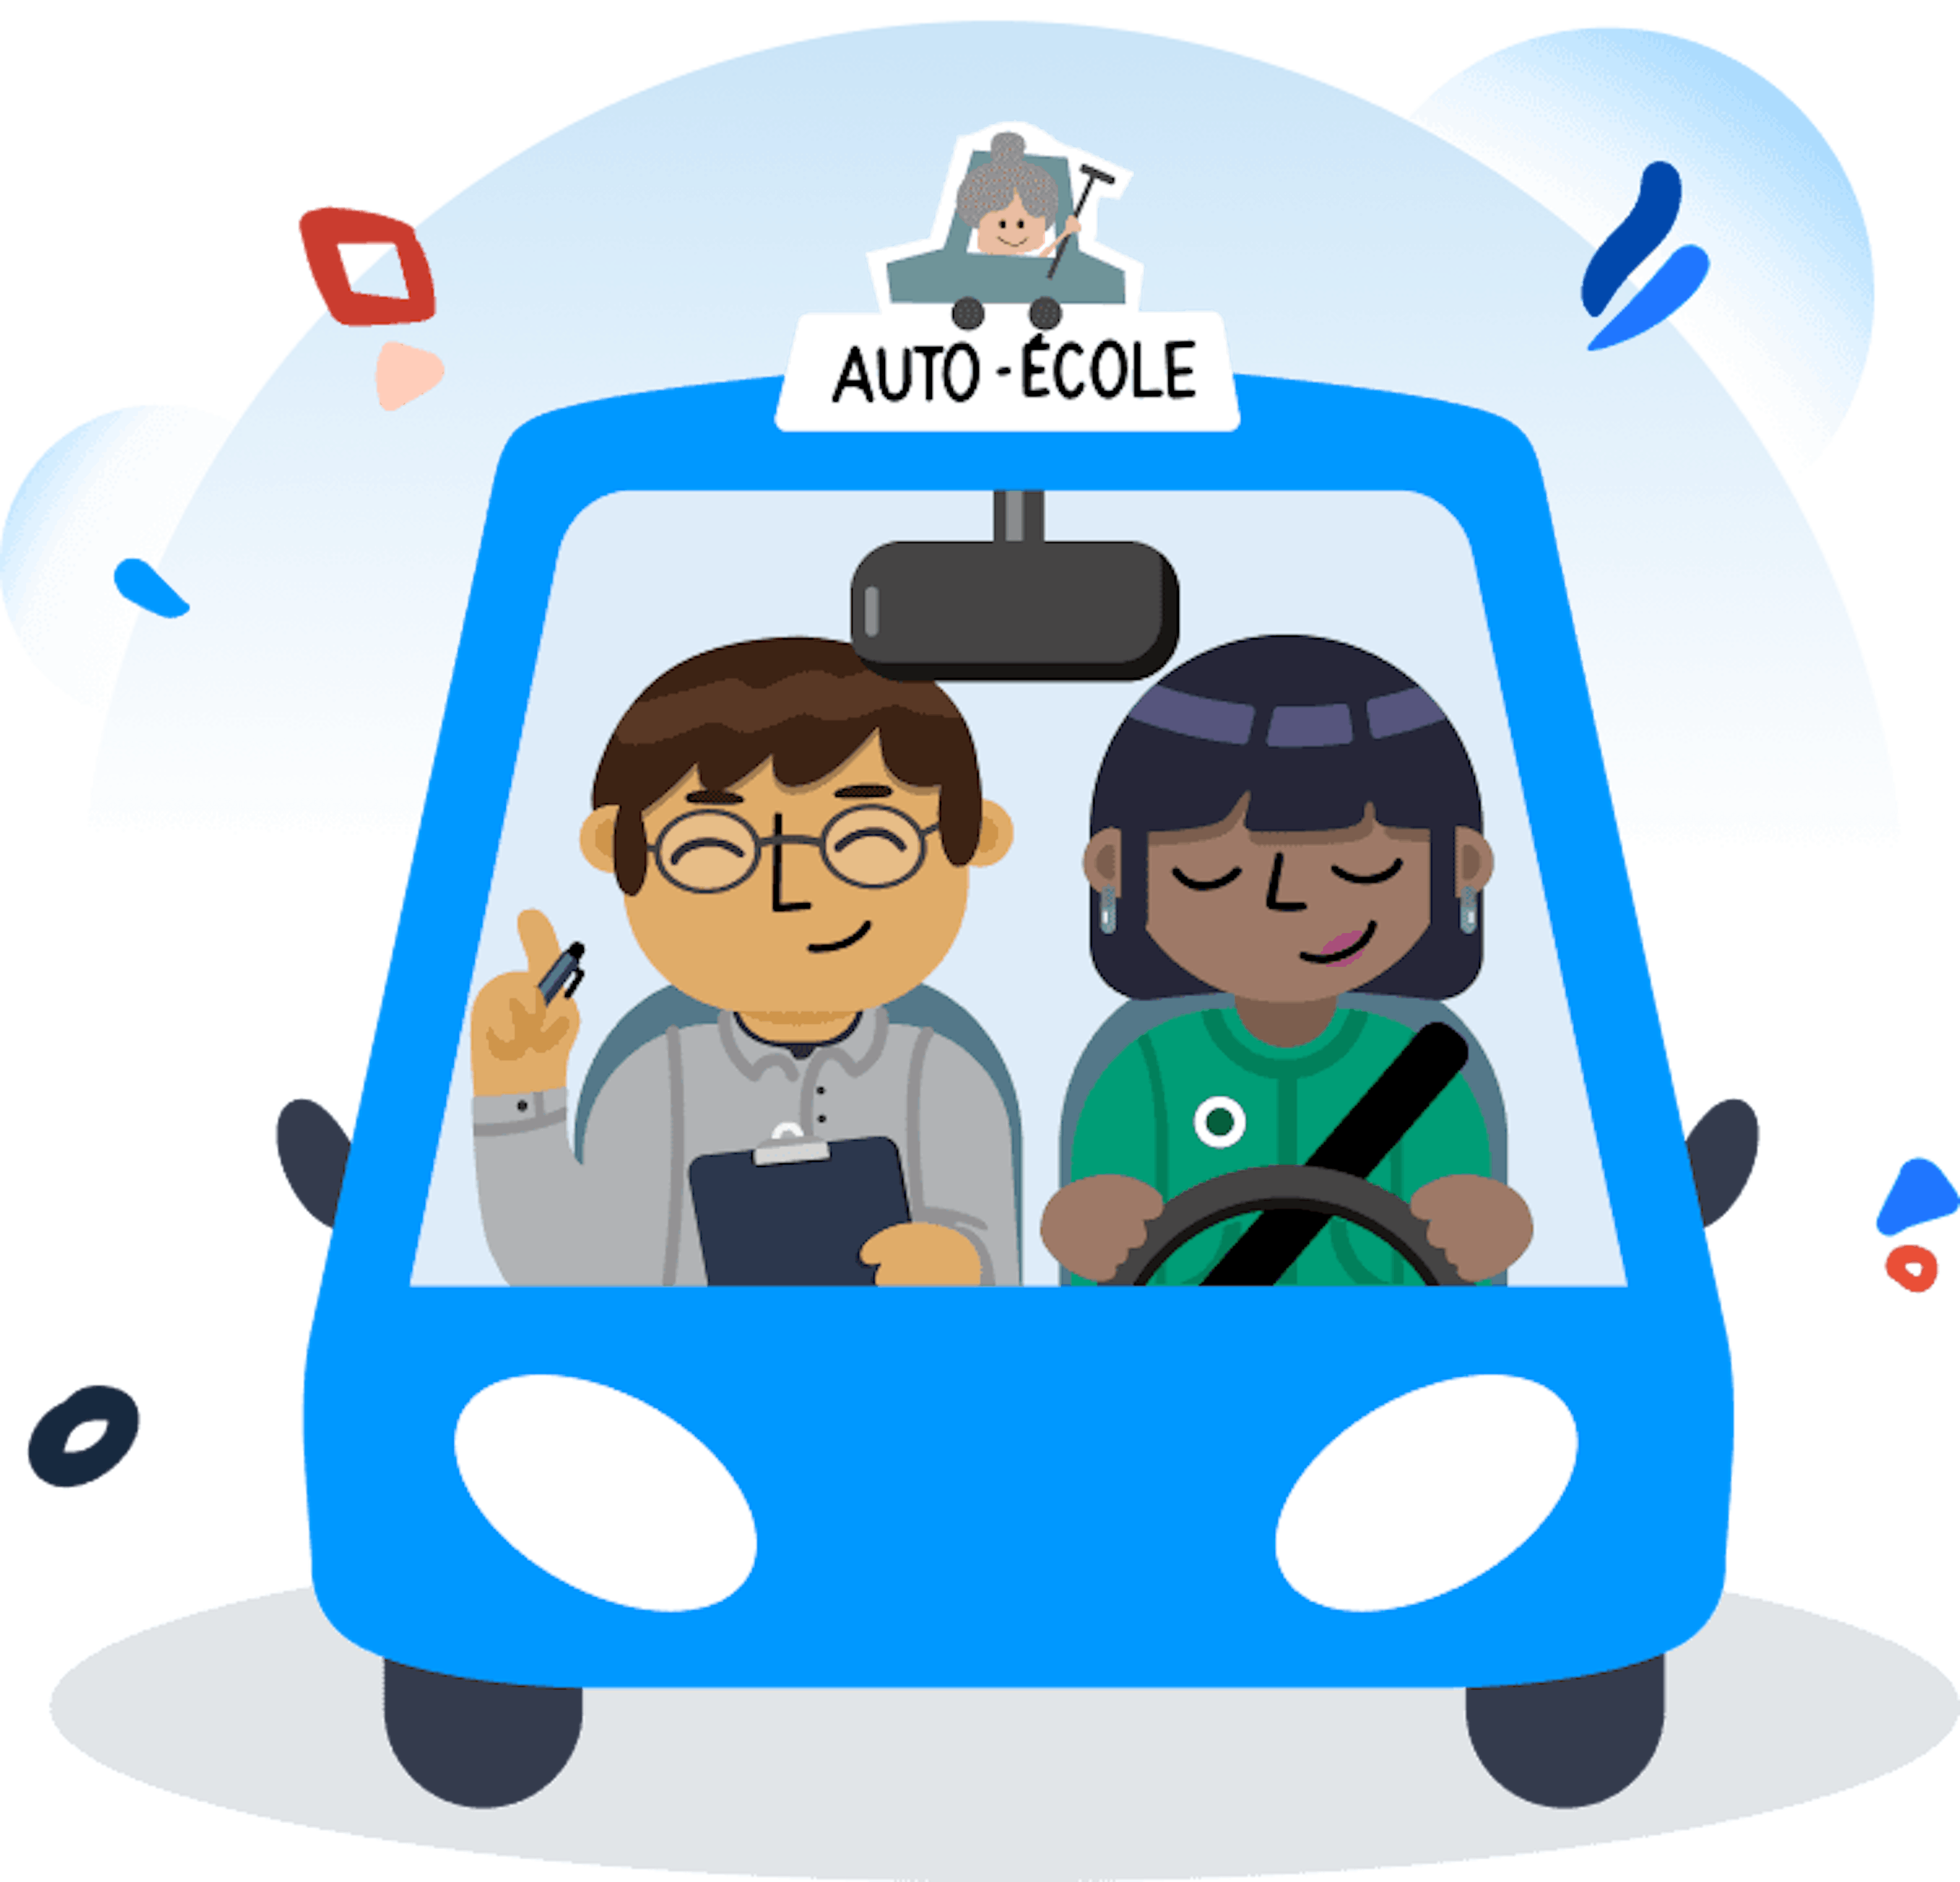 En voiture Simone (auto-école) — Wikipédia